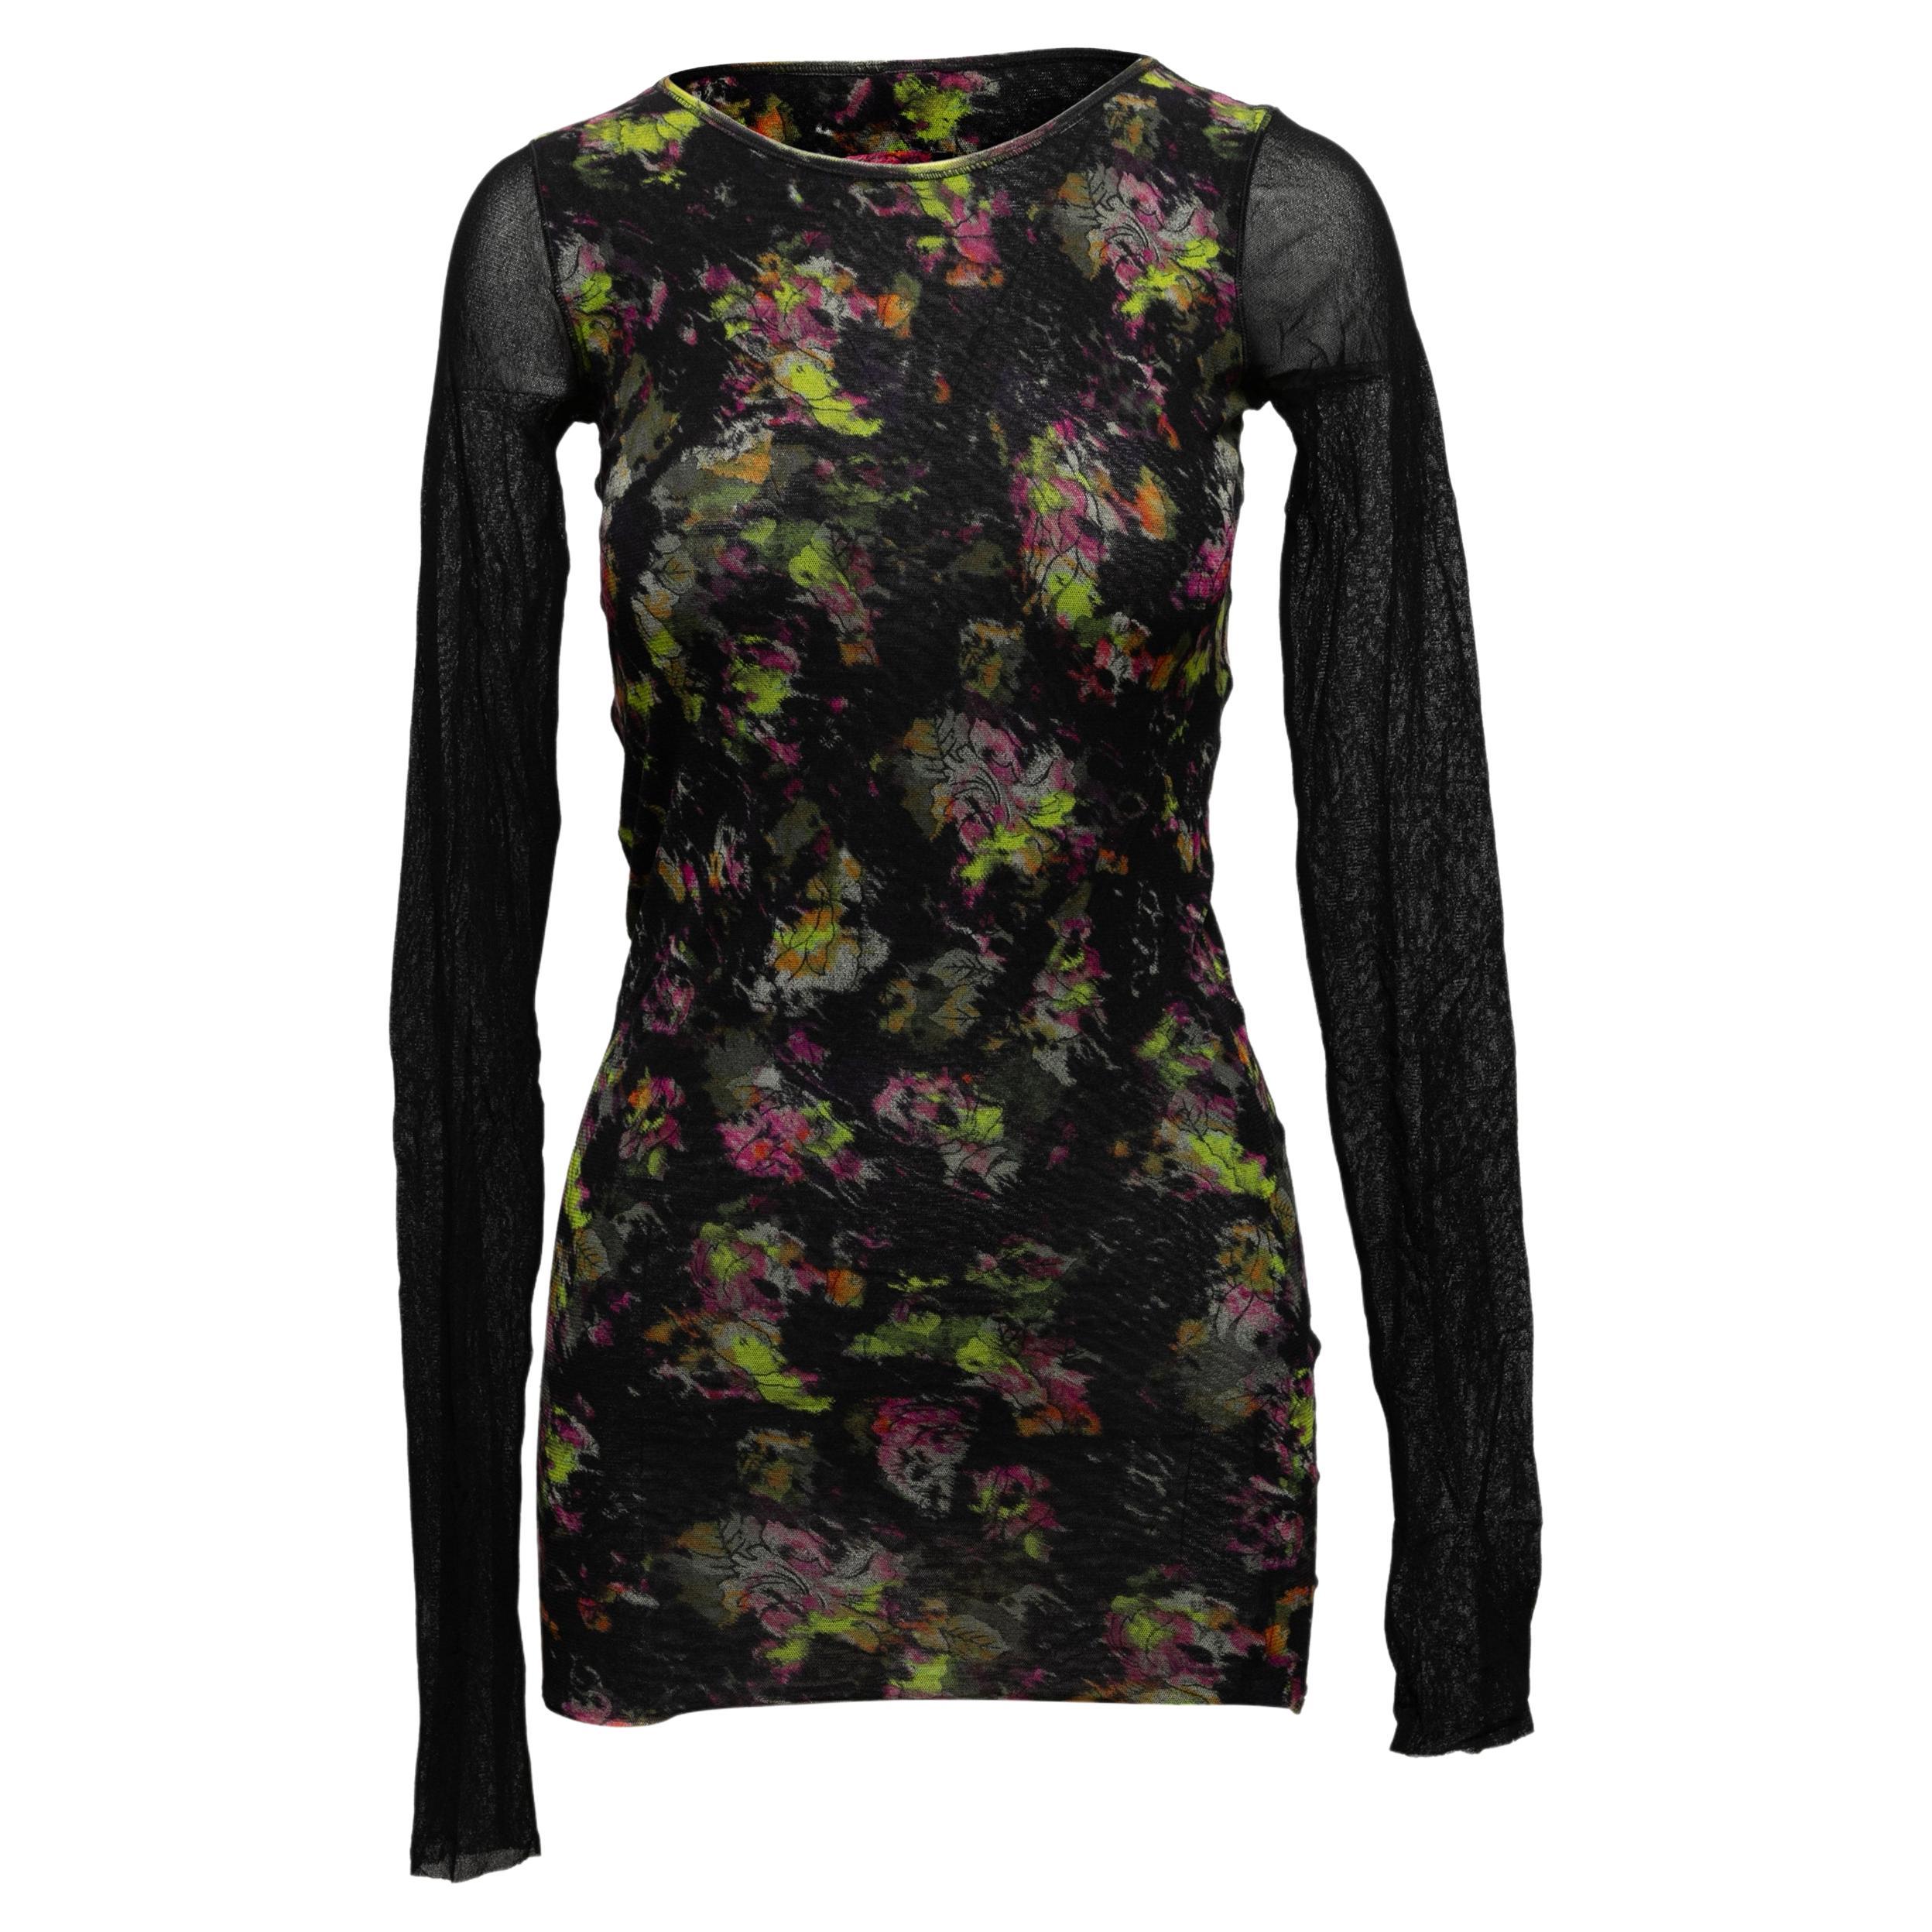 Black & Multicolor Jean Paul Gaultier Soleil Mesh Floral Print Top Size US S For Sale